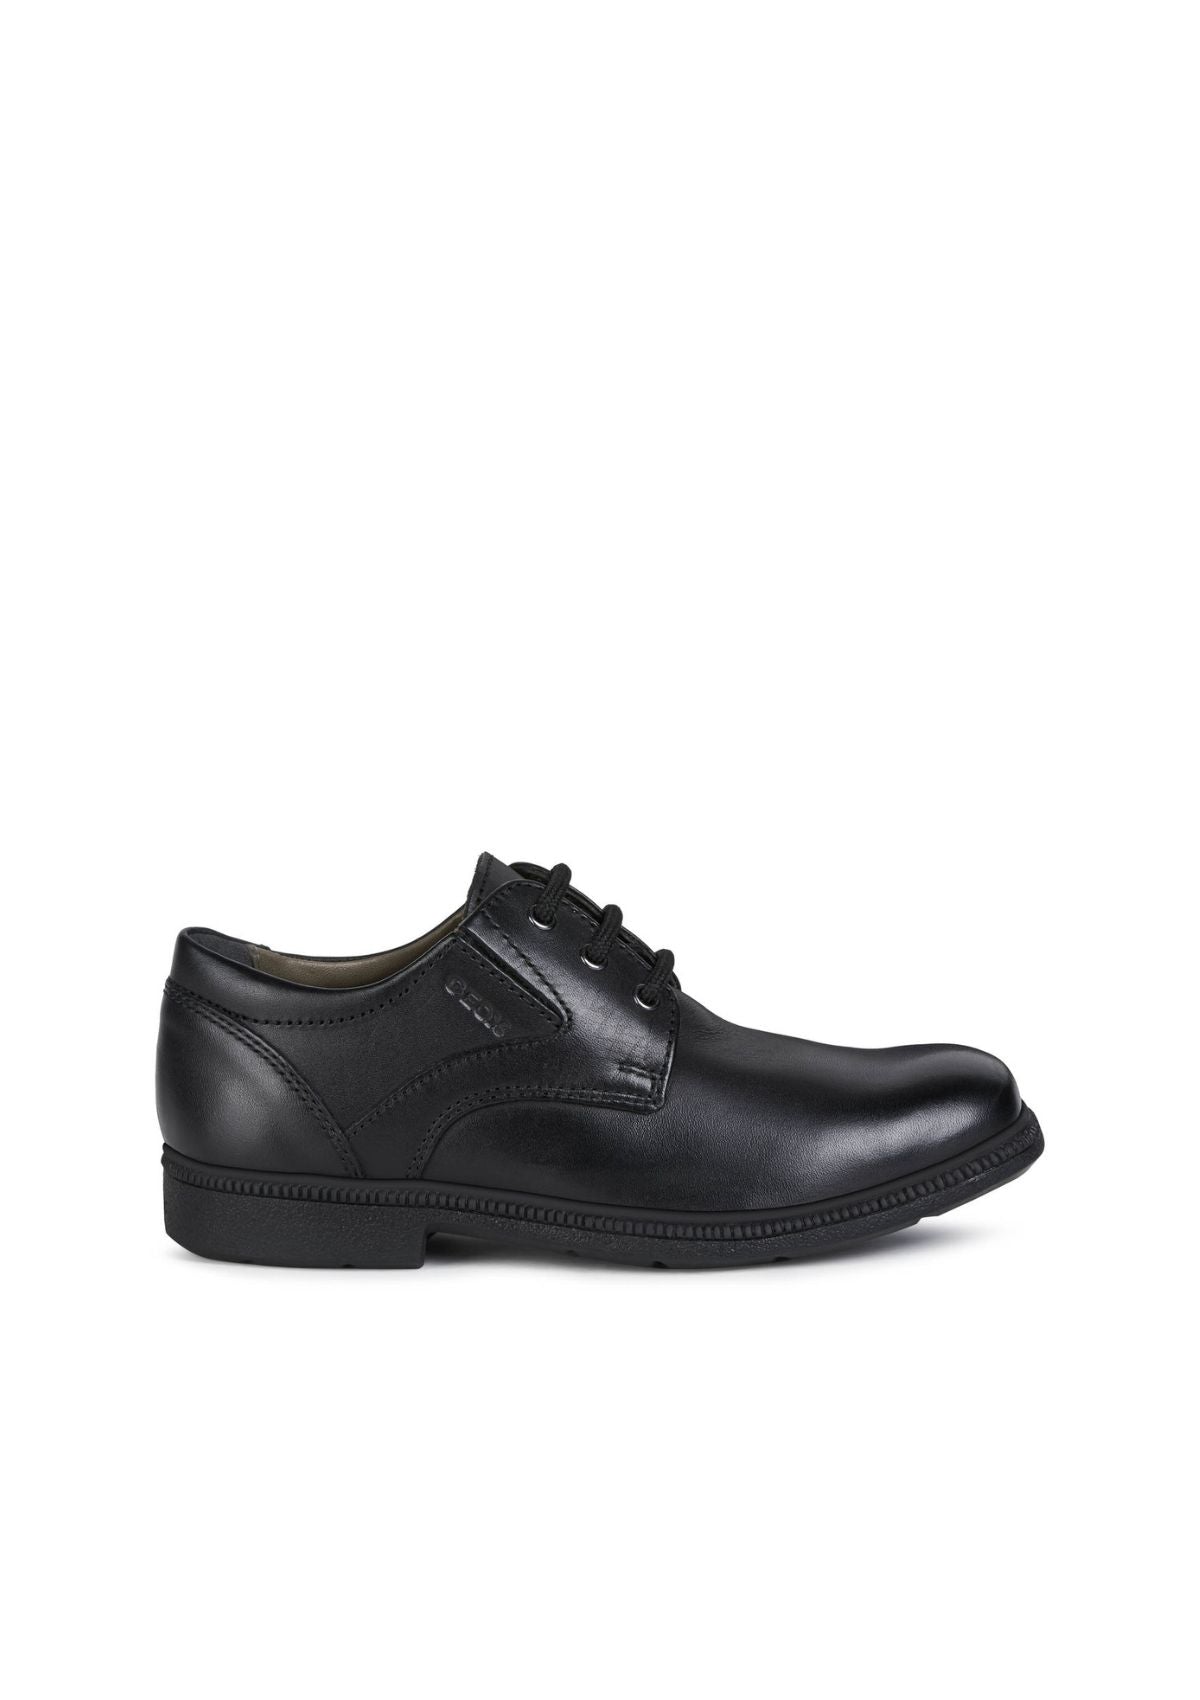 Geox Boys School Shoes FEDERICO Black side